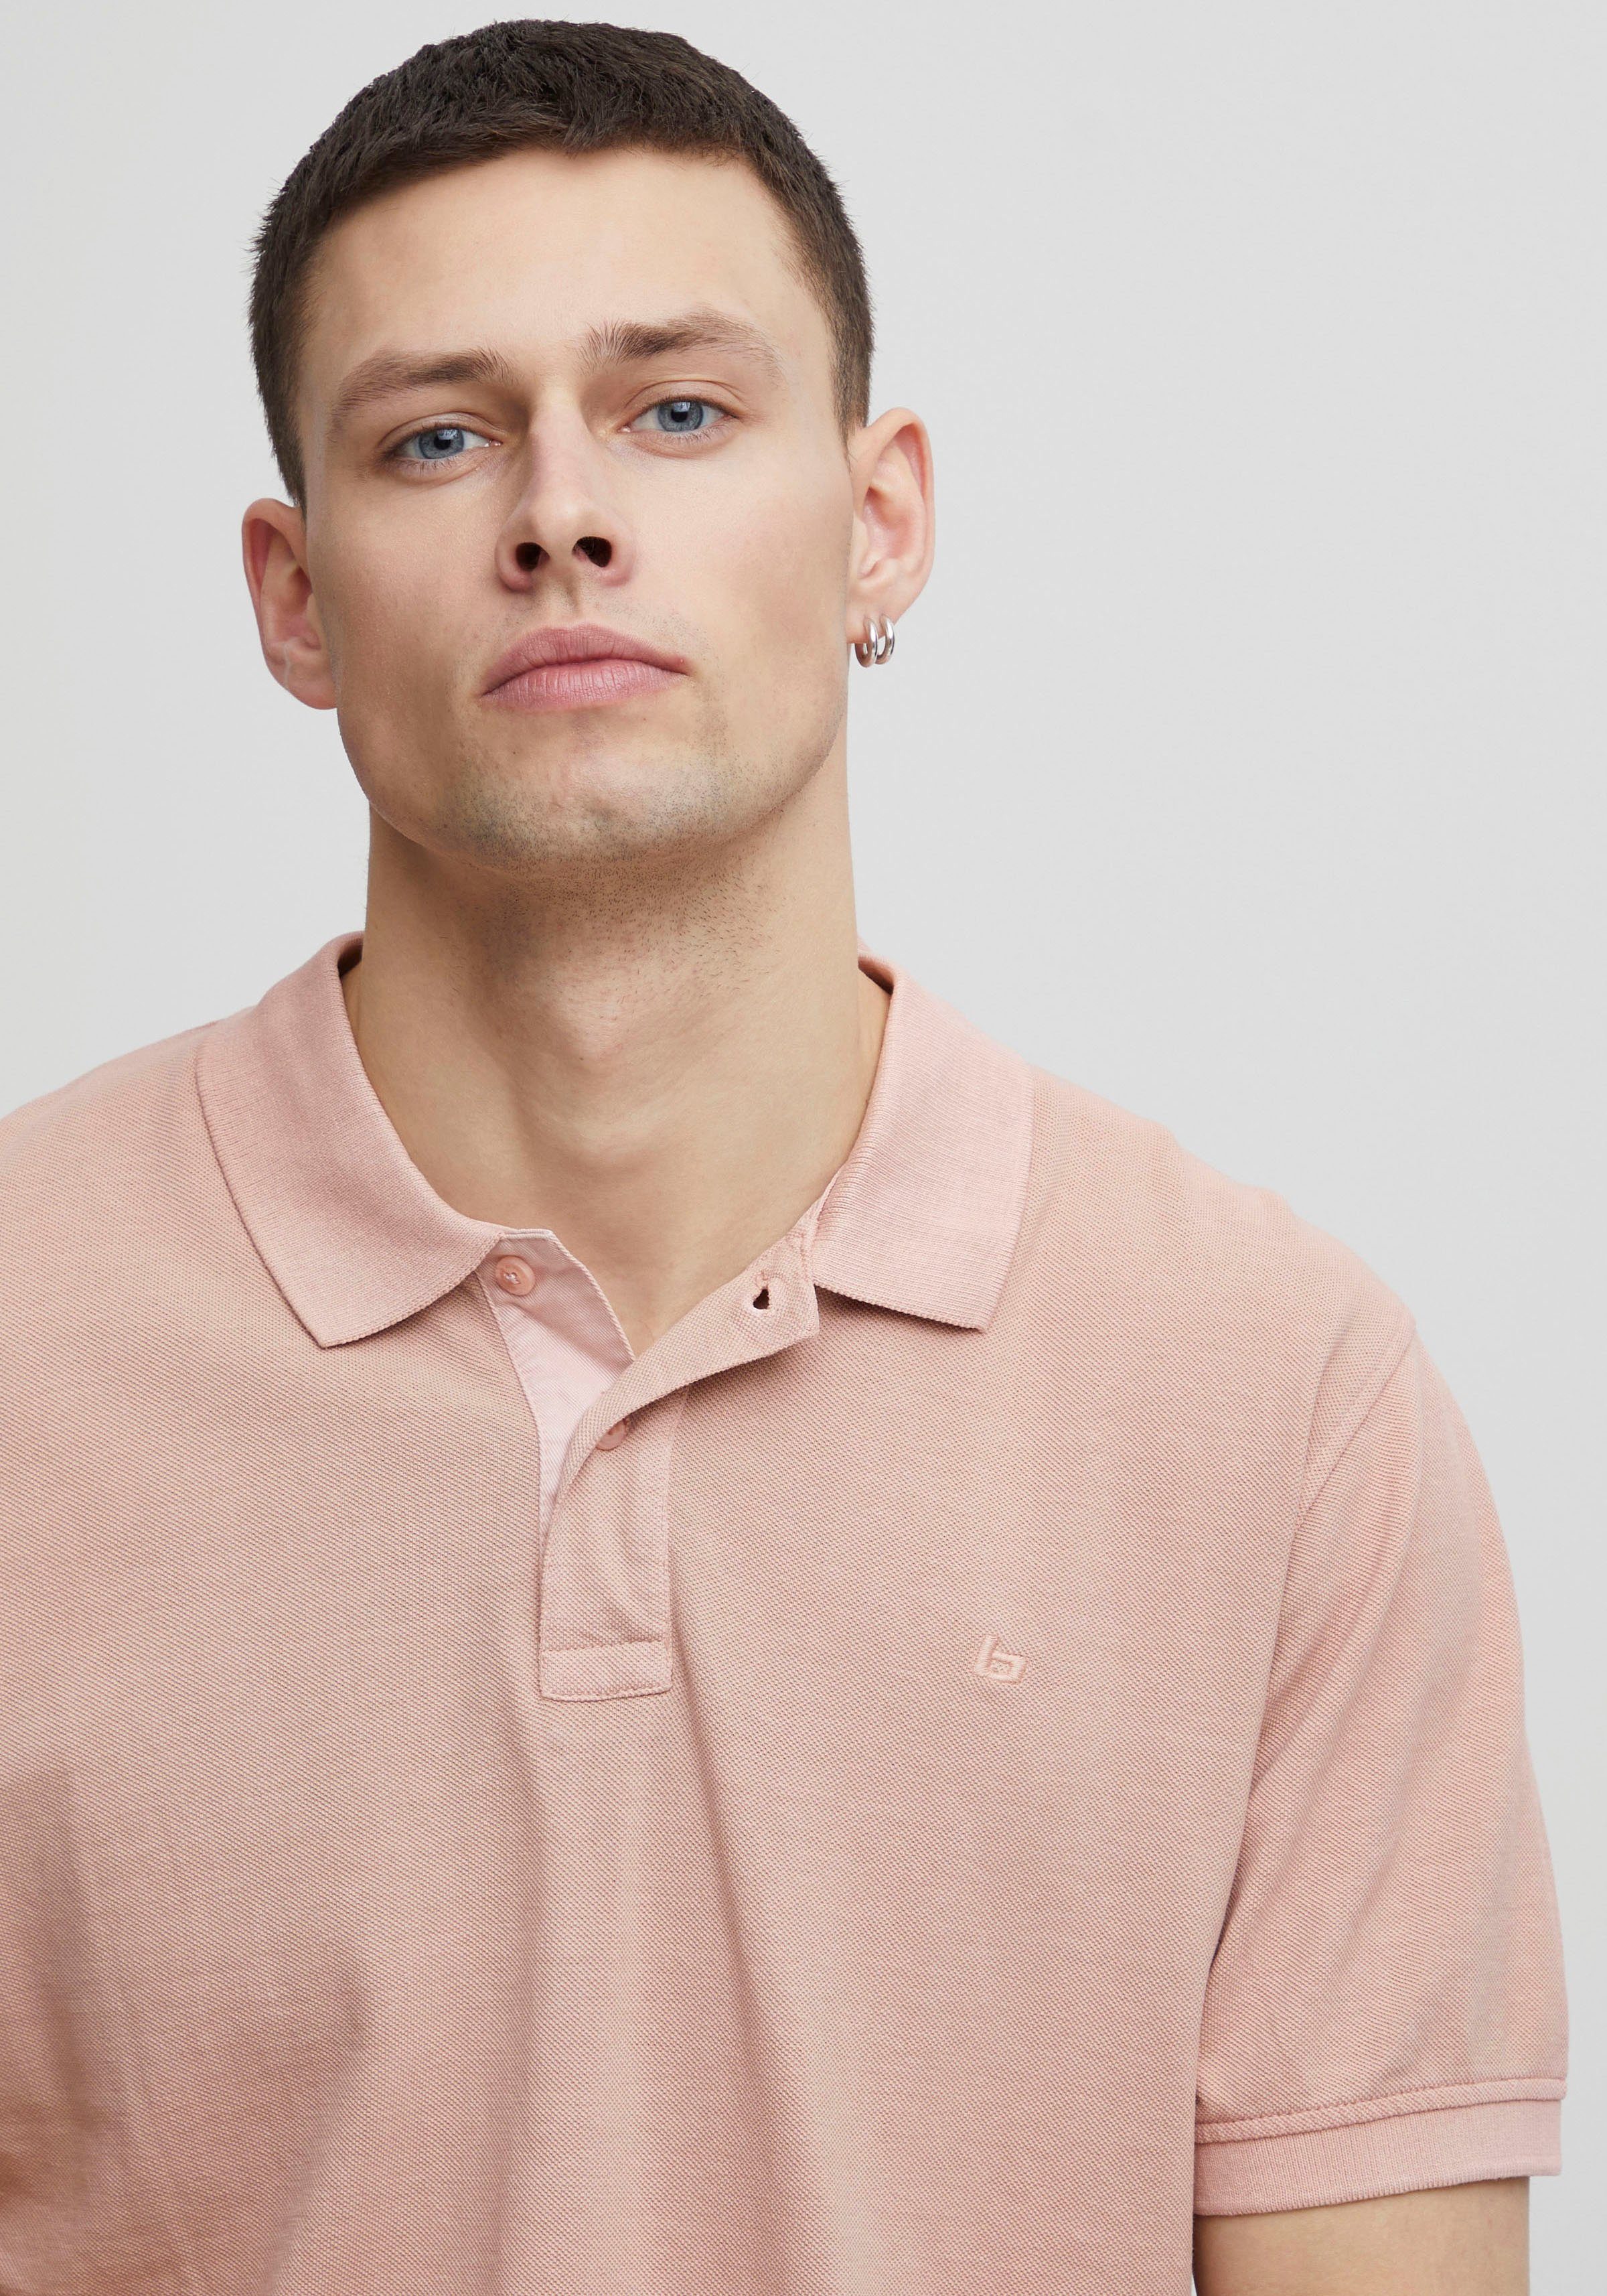 Blend Poloshirt BL-Poloshirt pink